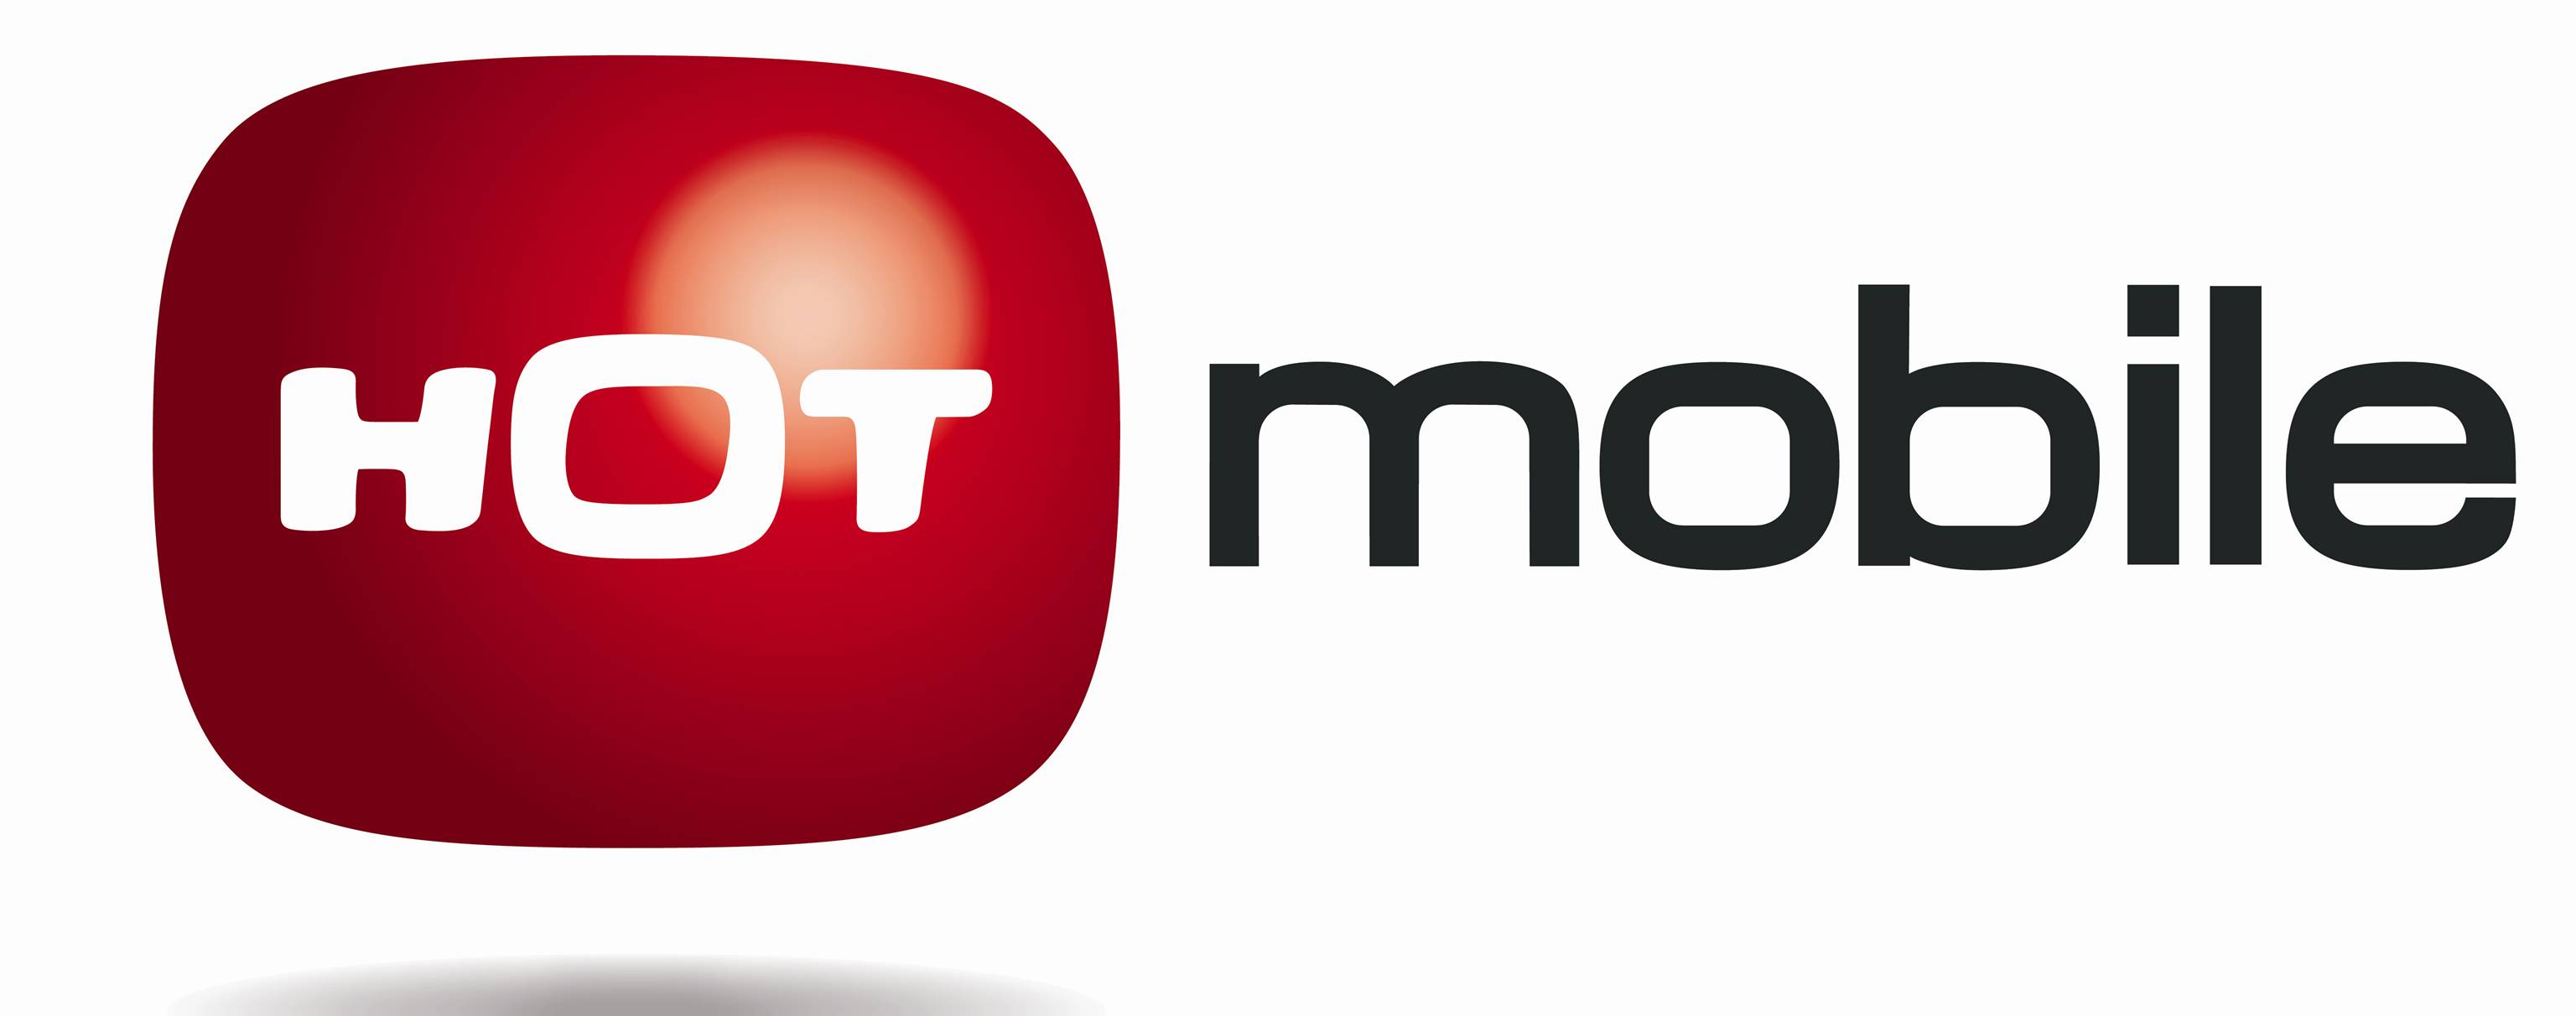 Компания HOT Mobile совершает переворот в сфере мобильной связи по предоплате